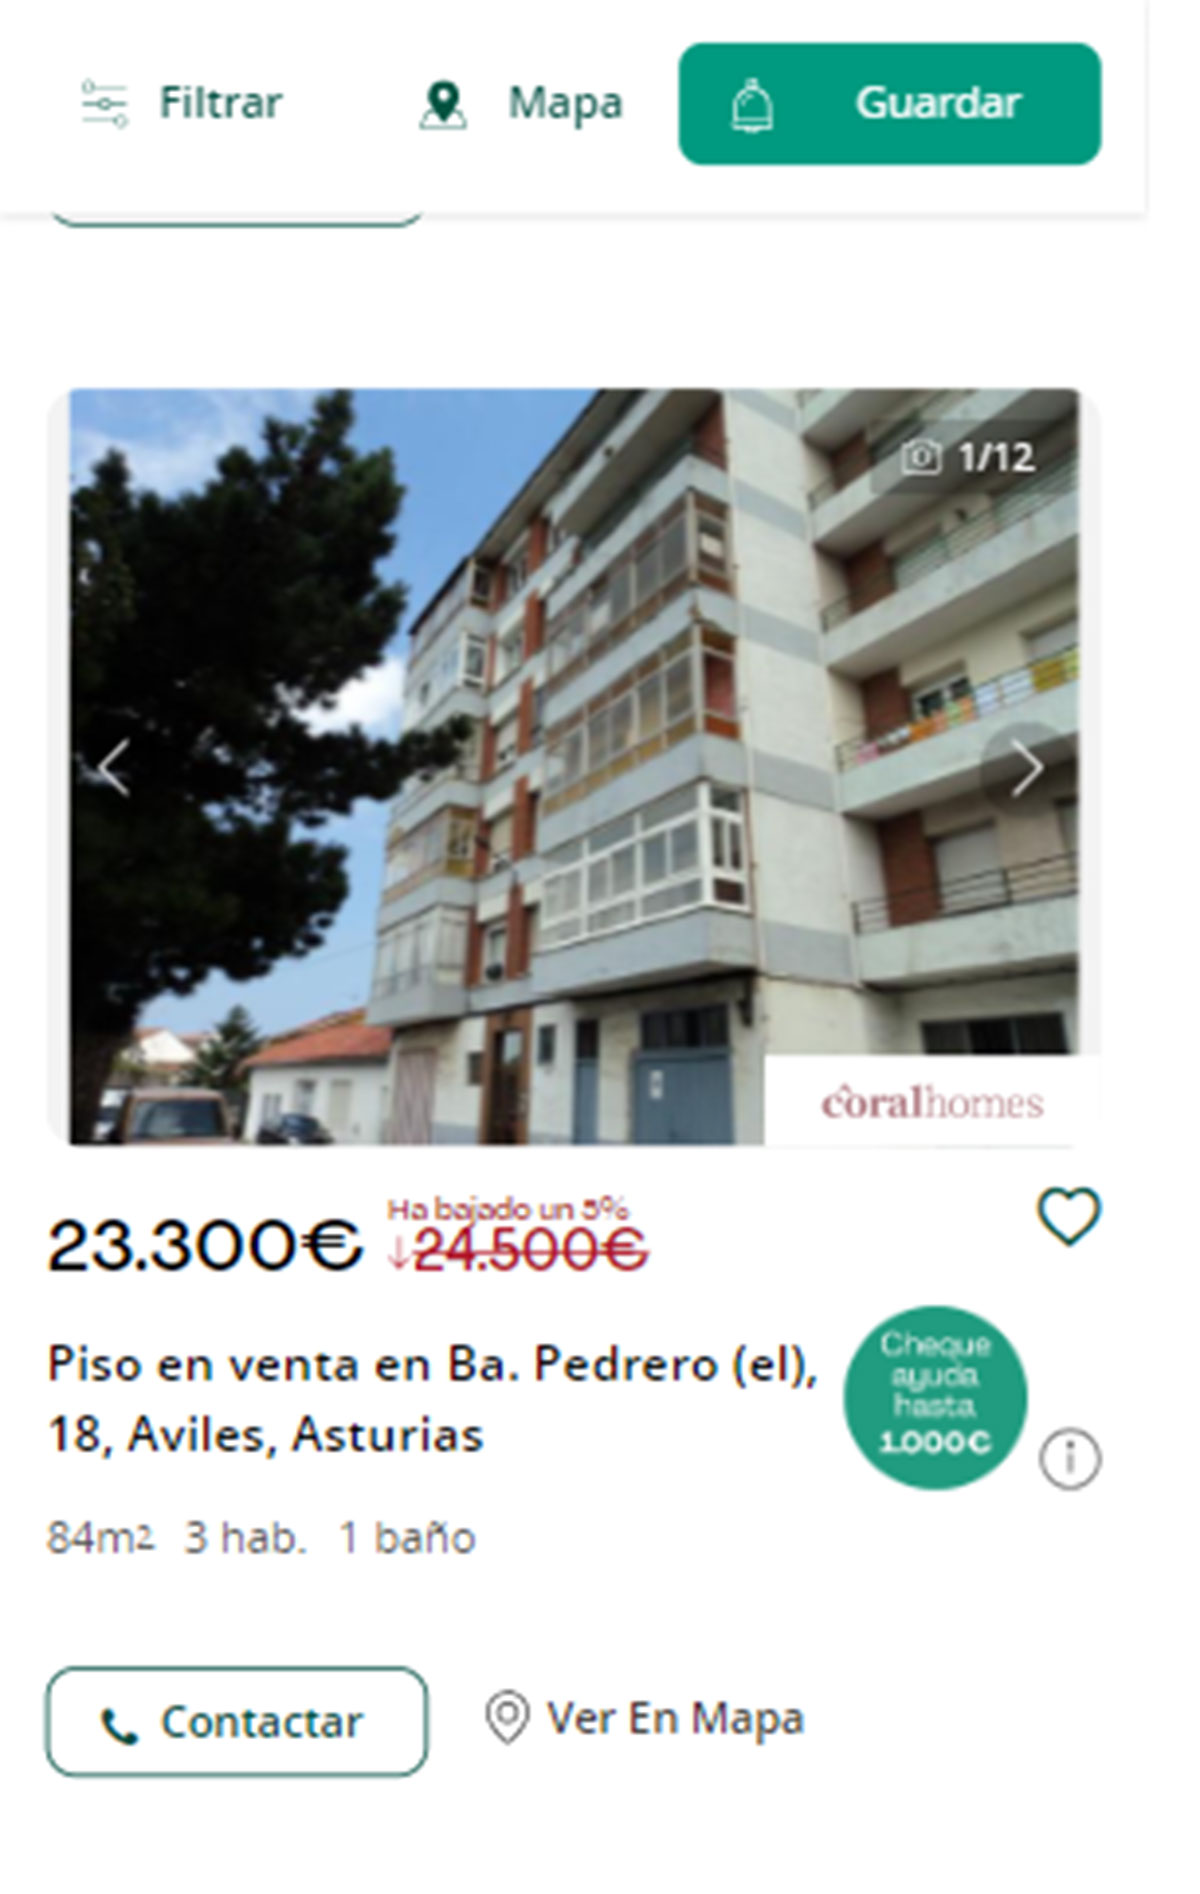 Piso en Asturias por 23.300 euros